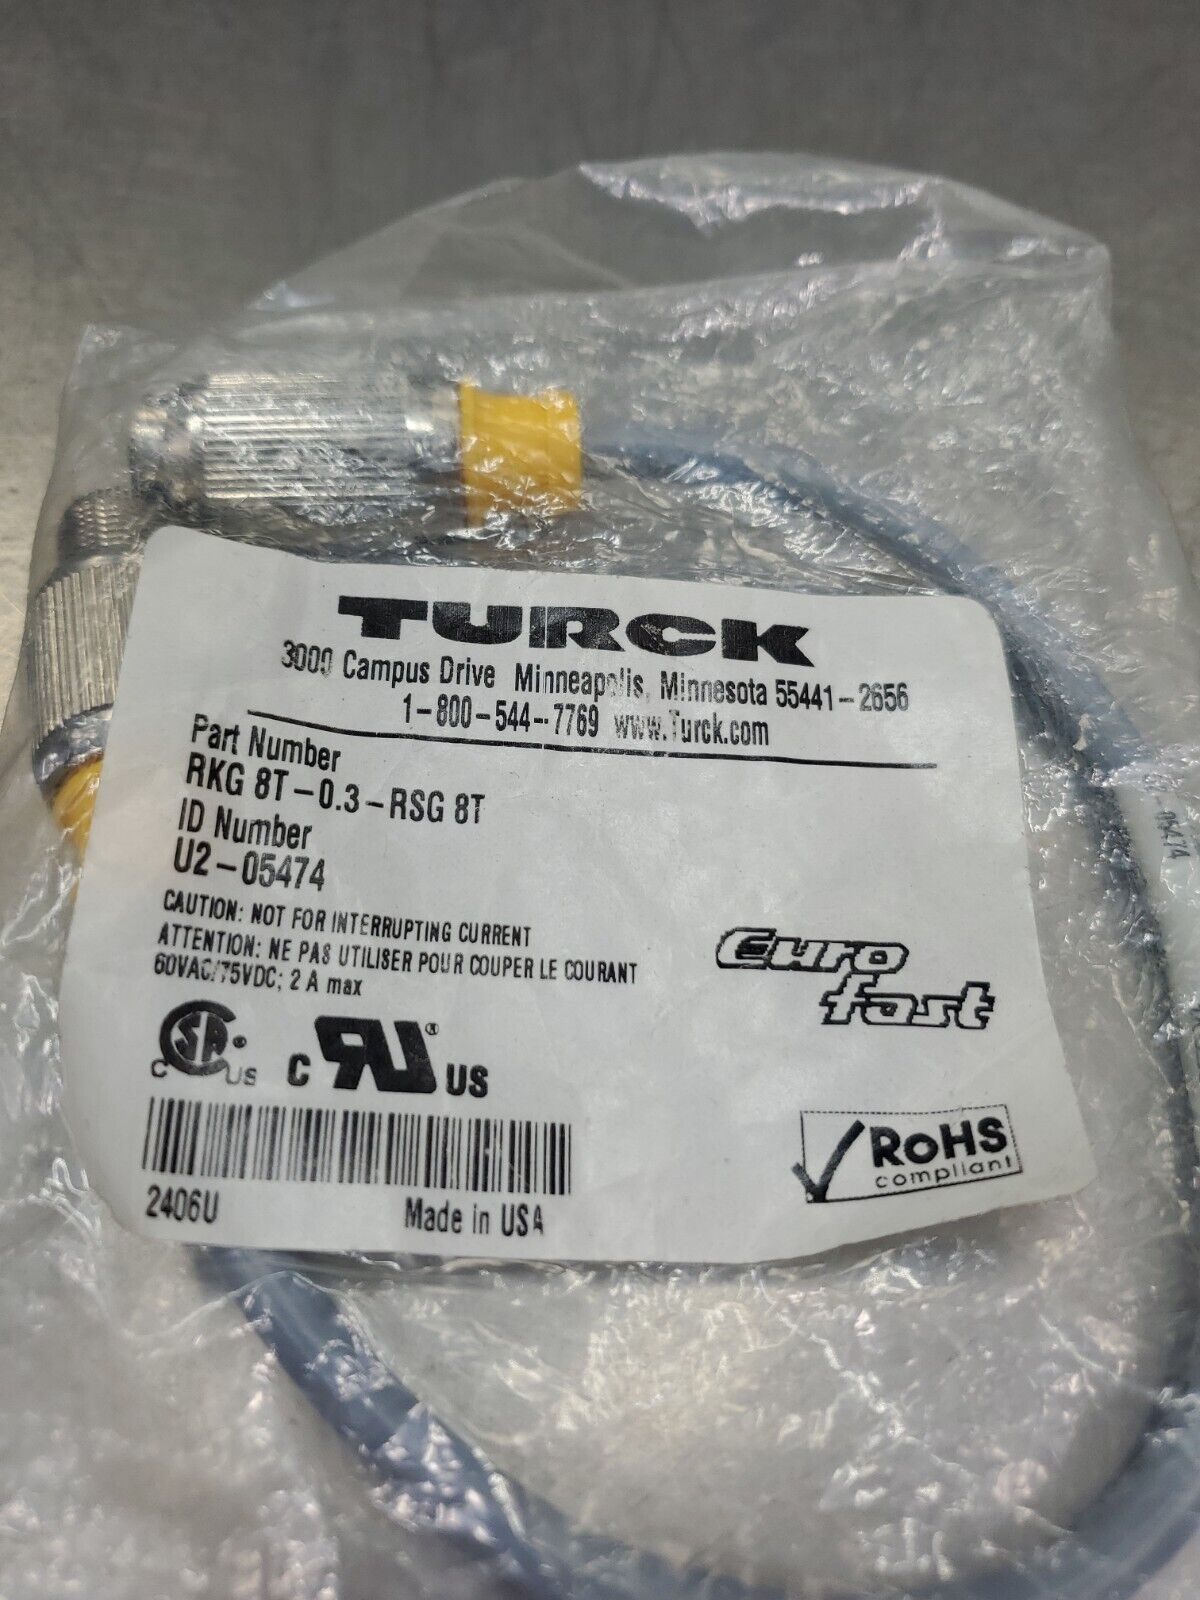 TURCK RKG 8T-0.3-RSG 8T Cordset                                      3D-31